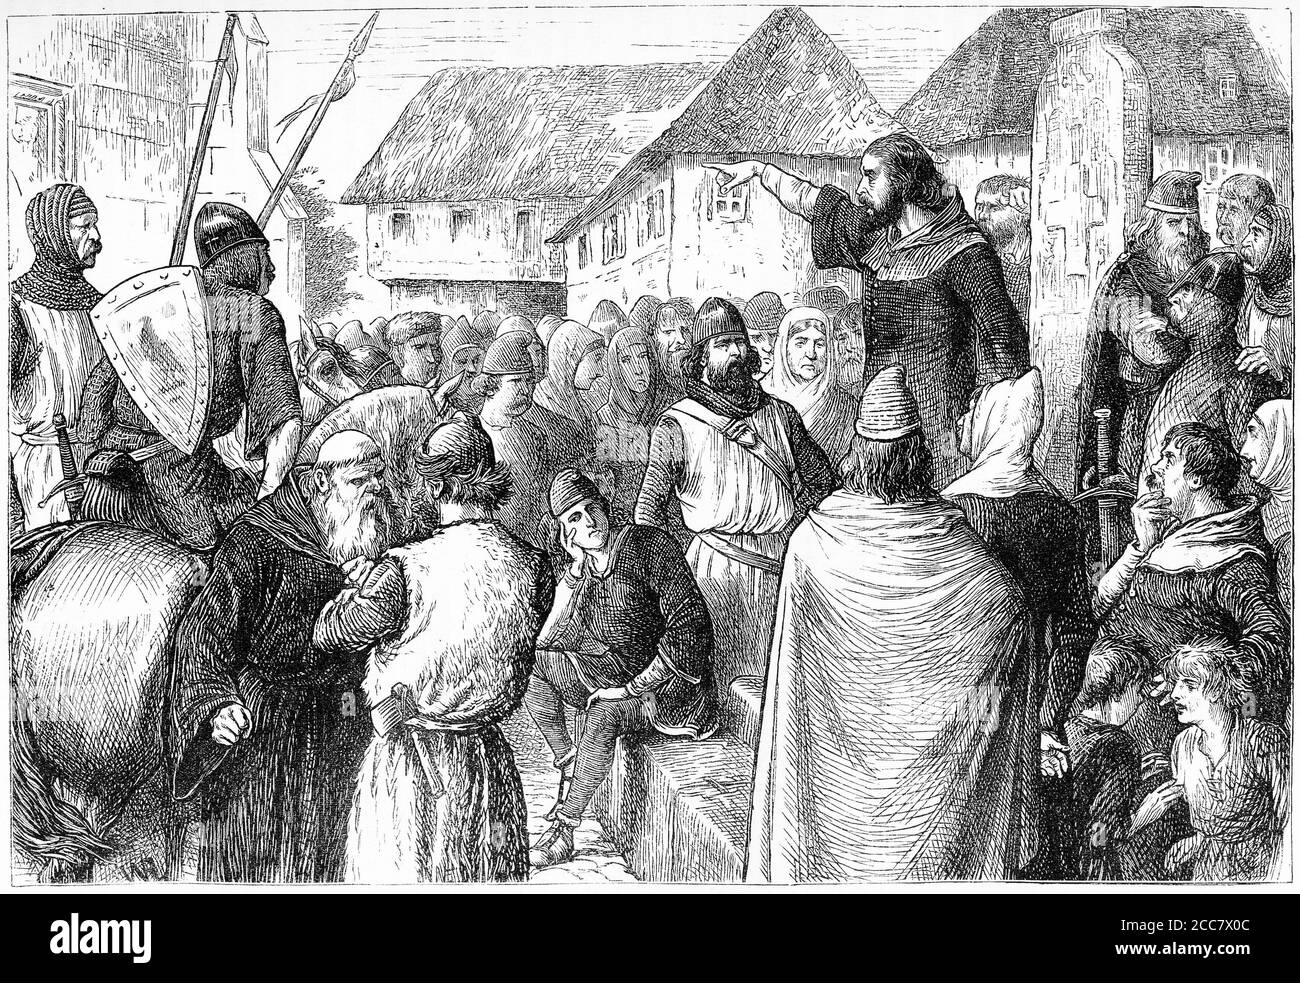 Kupferstich von Arnold von Brescia (c. 1090 – 1155), Predigen auf einem öffentlichen Platz. Auch bekannt als Arnaldus, Arnald war ein italienischer Kanon regelmäßig aus der Lombardei, forderte die Kirche auf Eigentum verzichten. Protestanten Rang ihn unter den Vorläufern der Reformation. Stockfoto